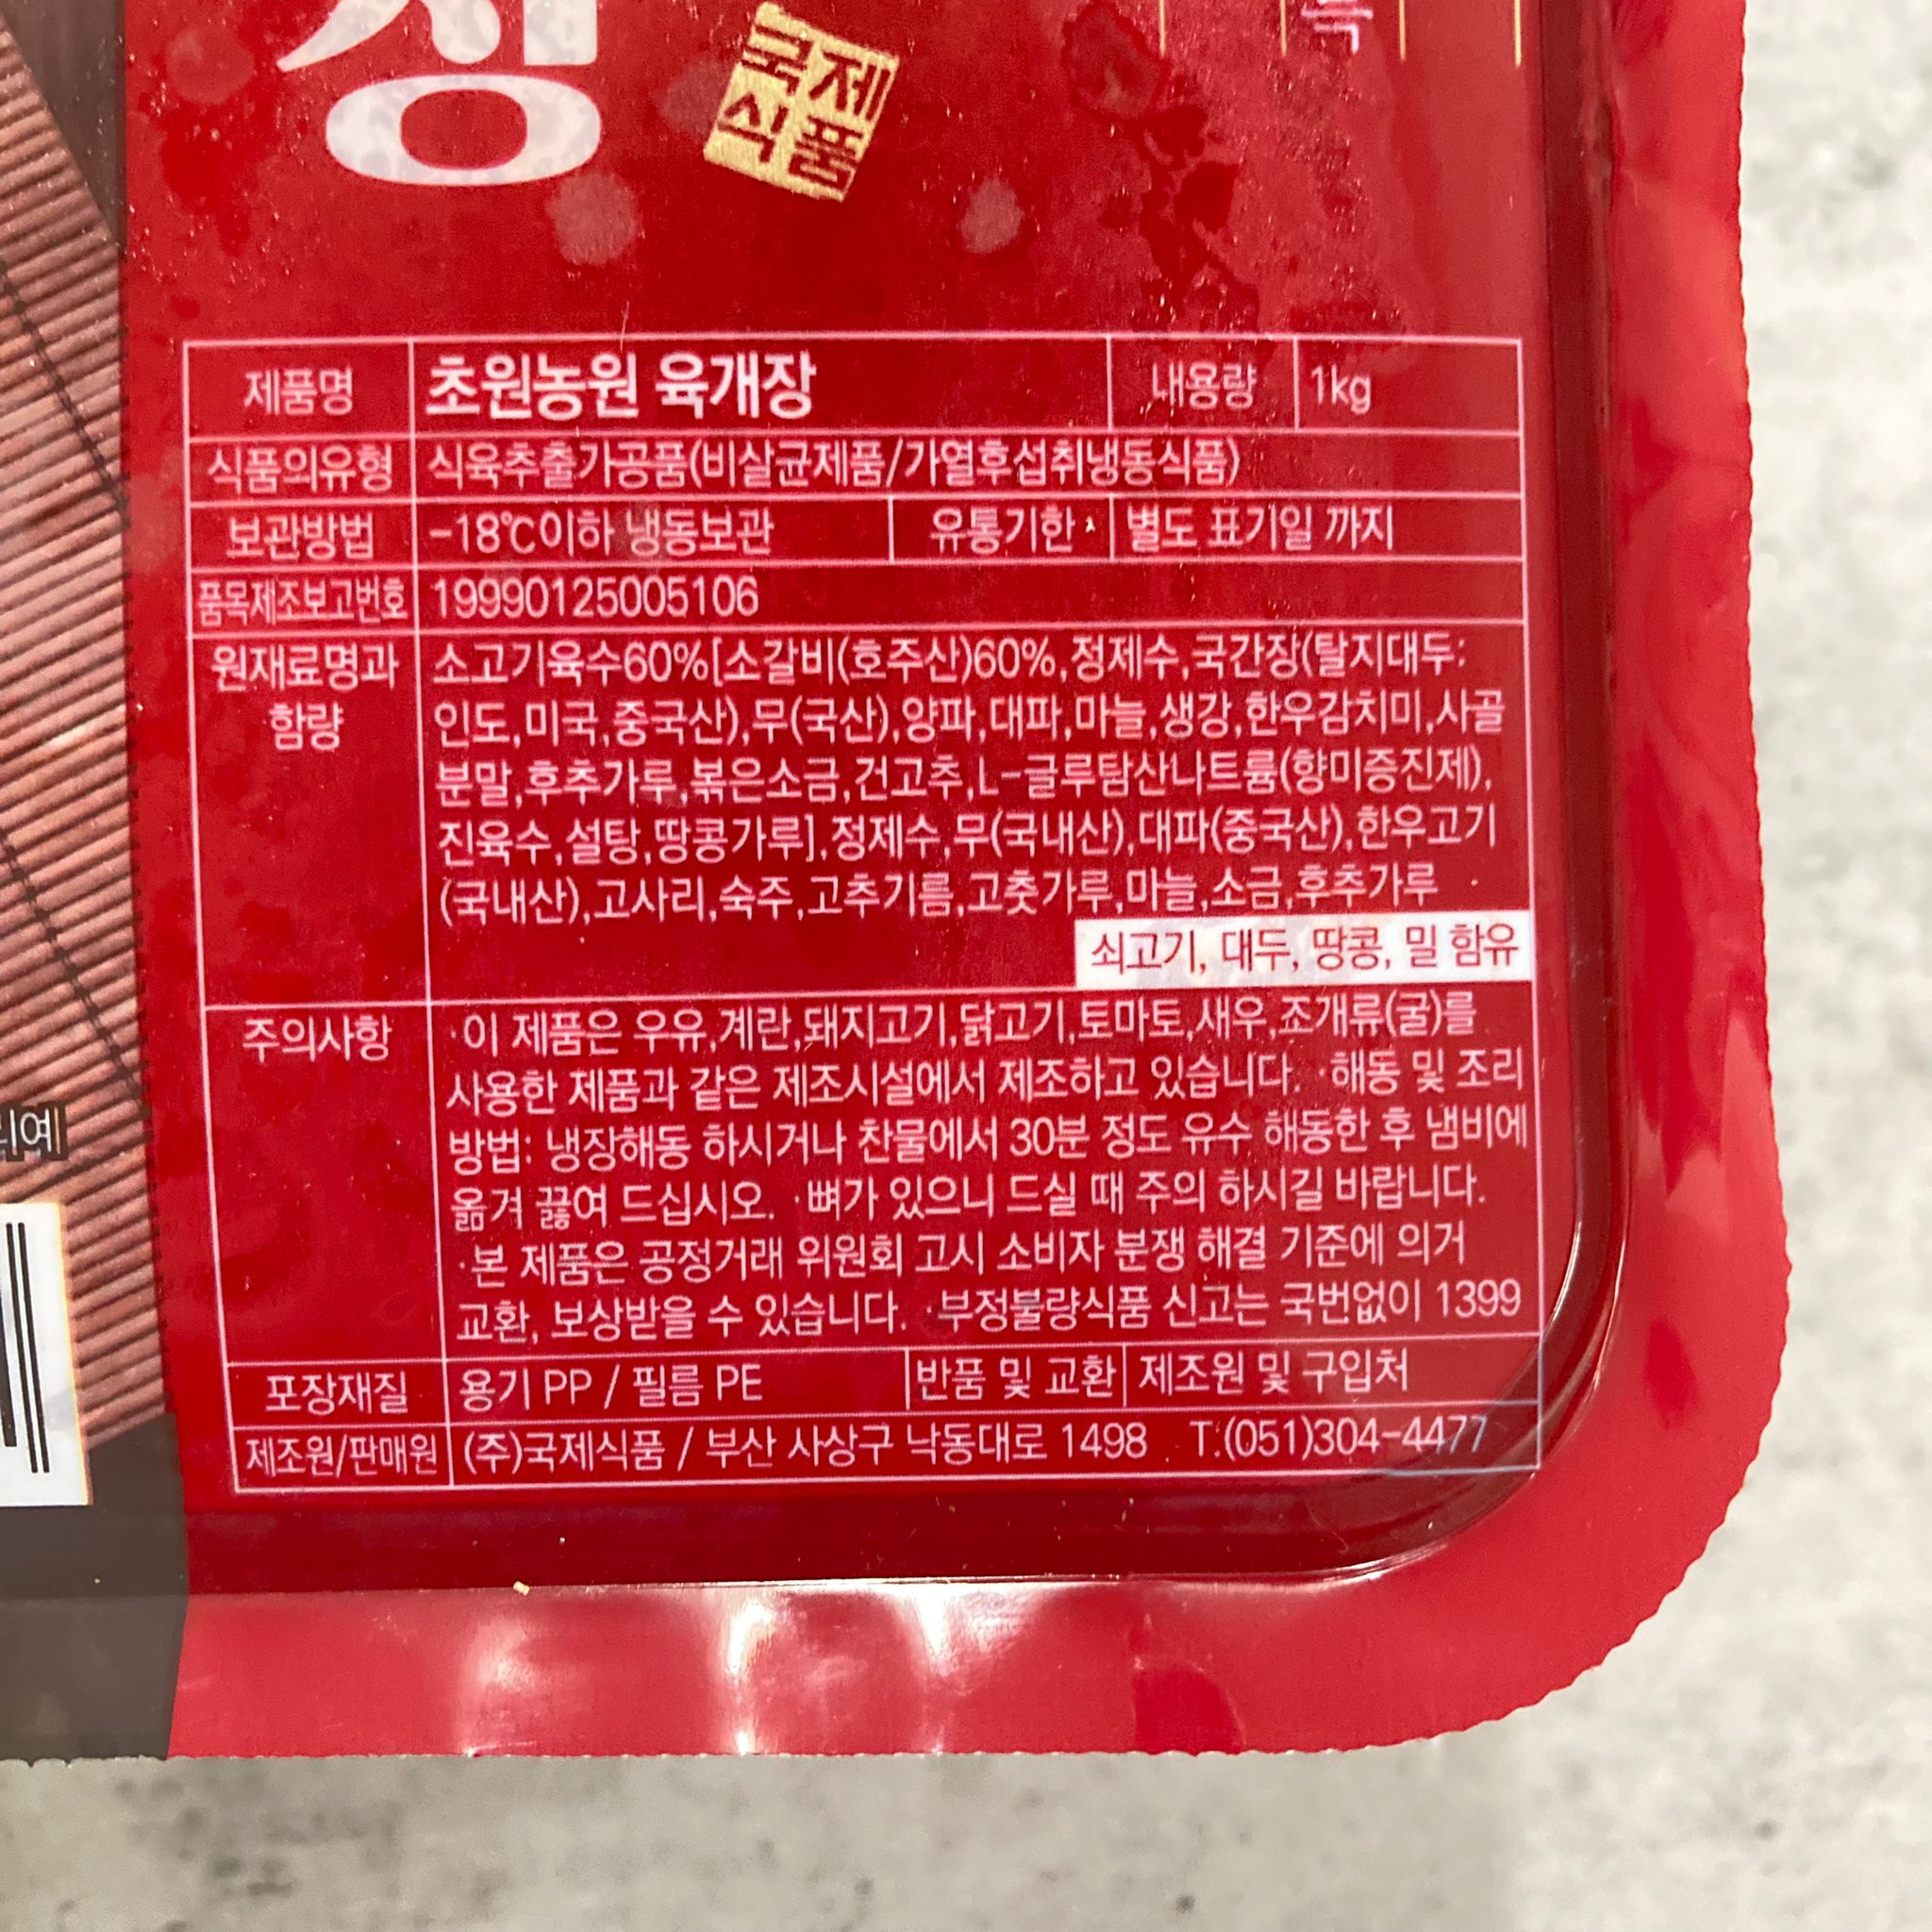 韓國食品-[국제] 육개장1000g